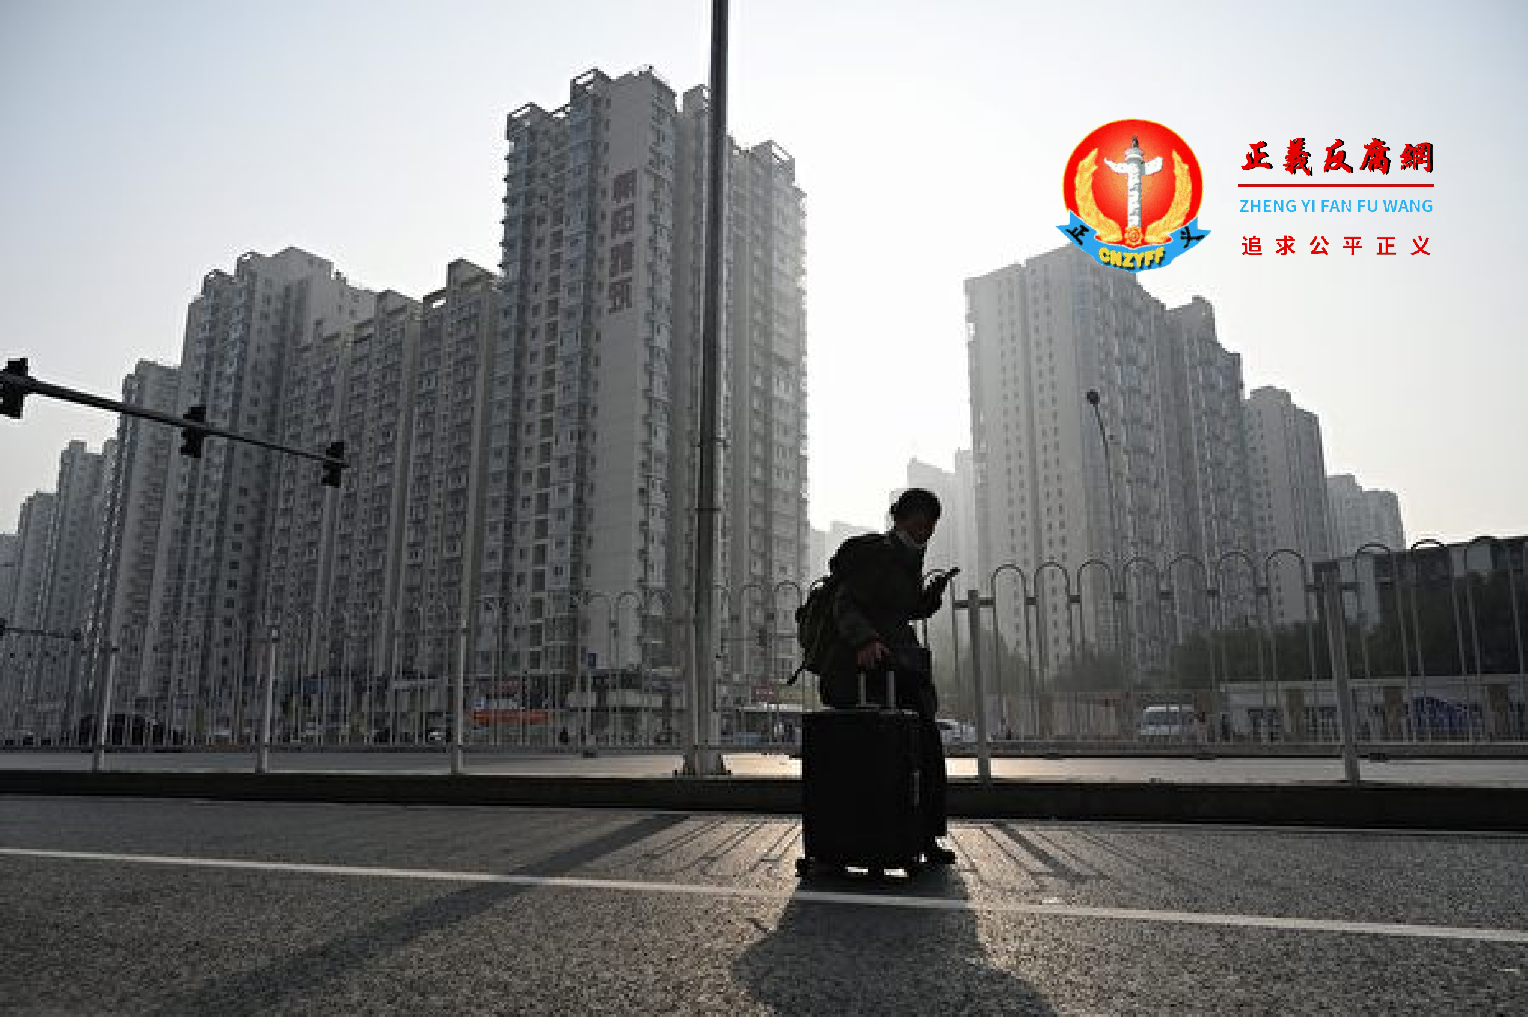 债务违约“史无前例” 中国房地产进入恶性循环